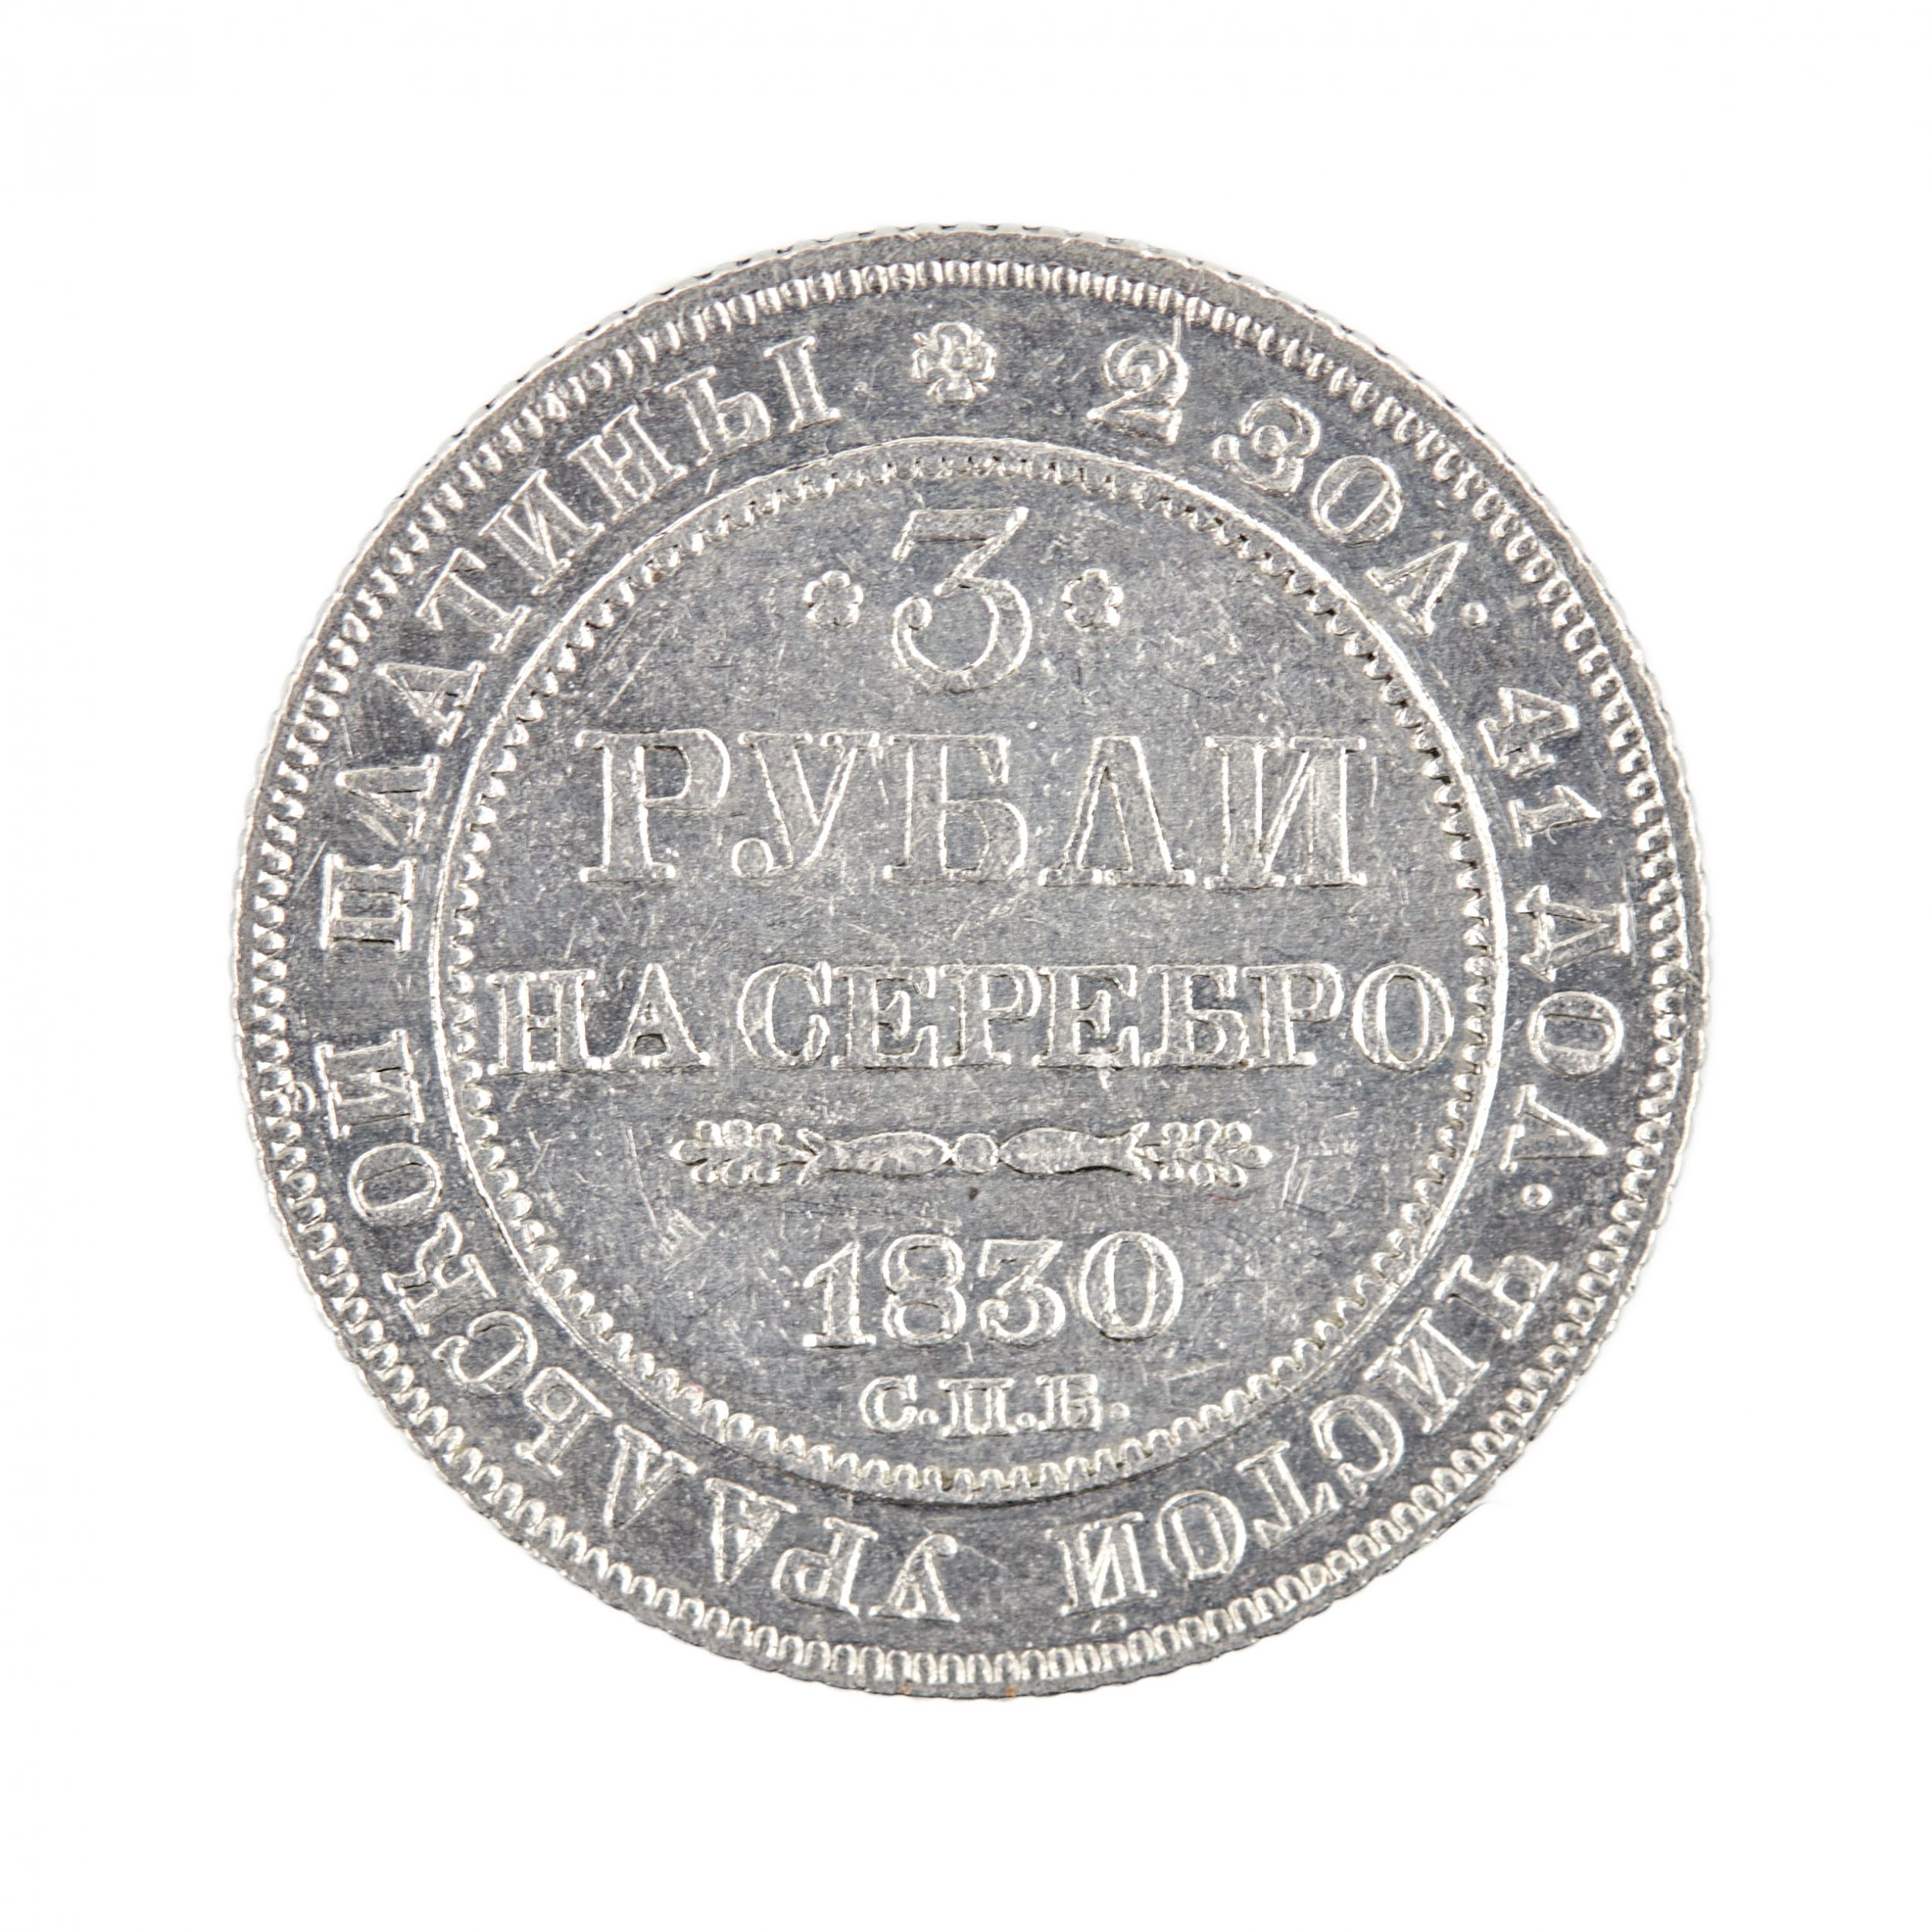 3 rubles in platinum Nicholas I, 1830. - Image 2 of 3